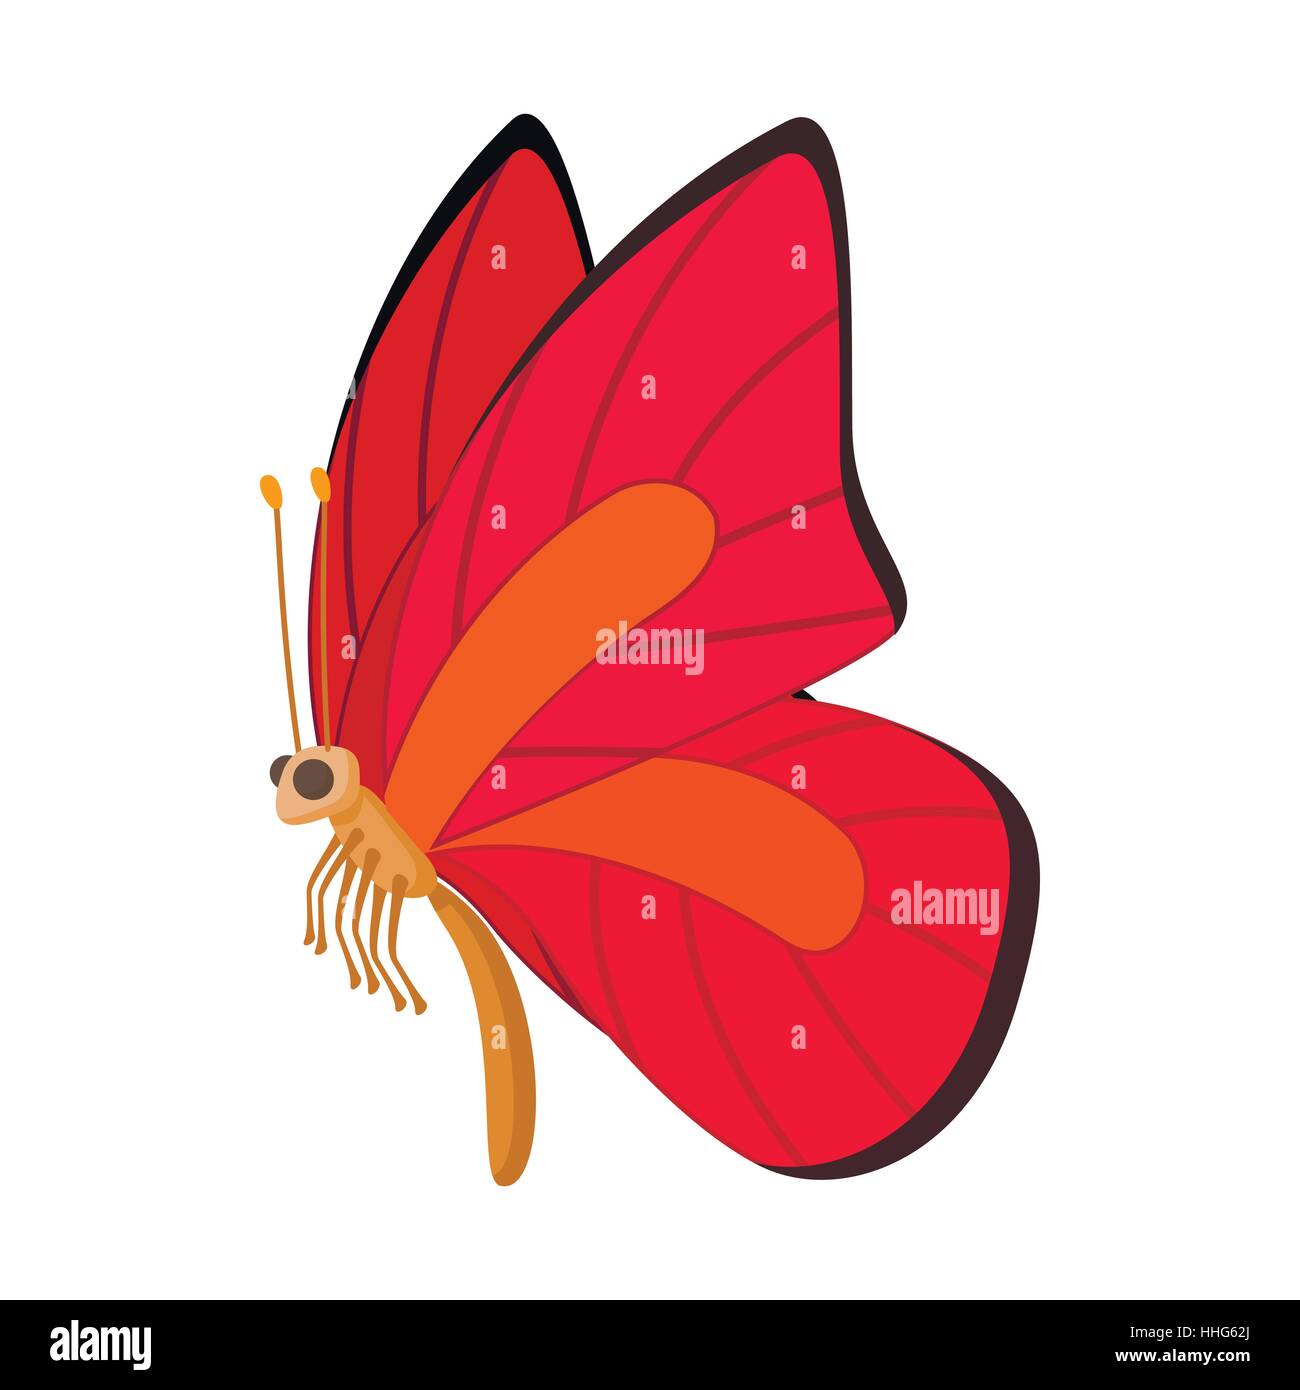 orange butterfly cartoon